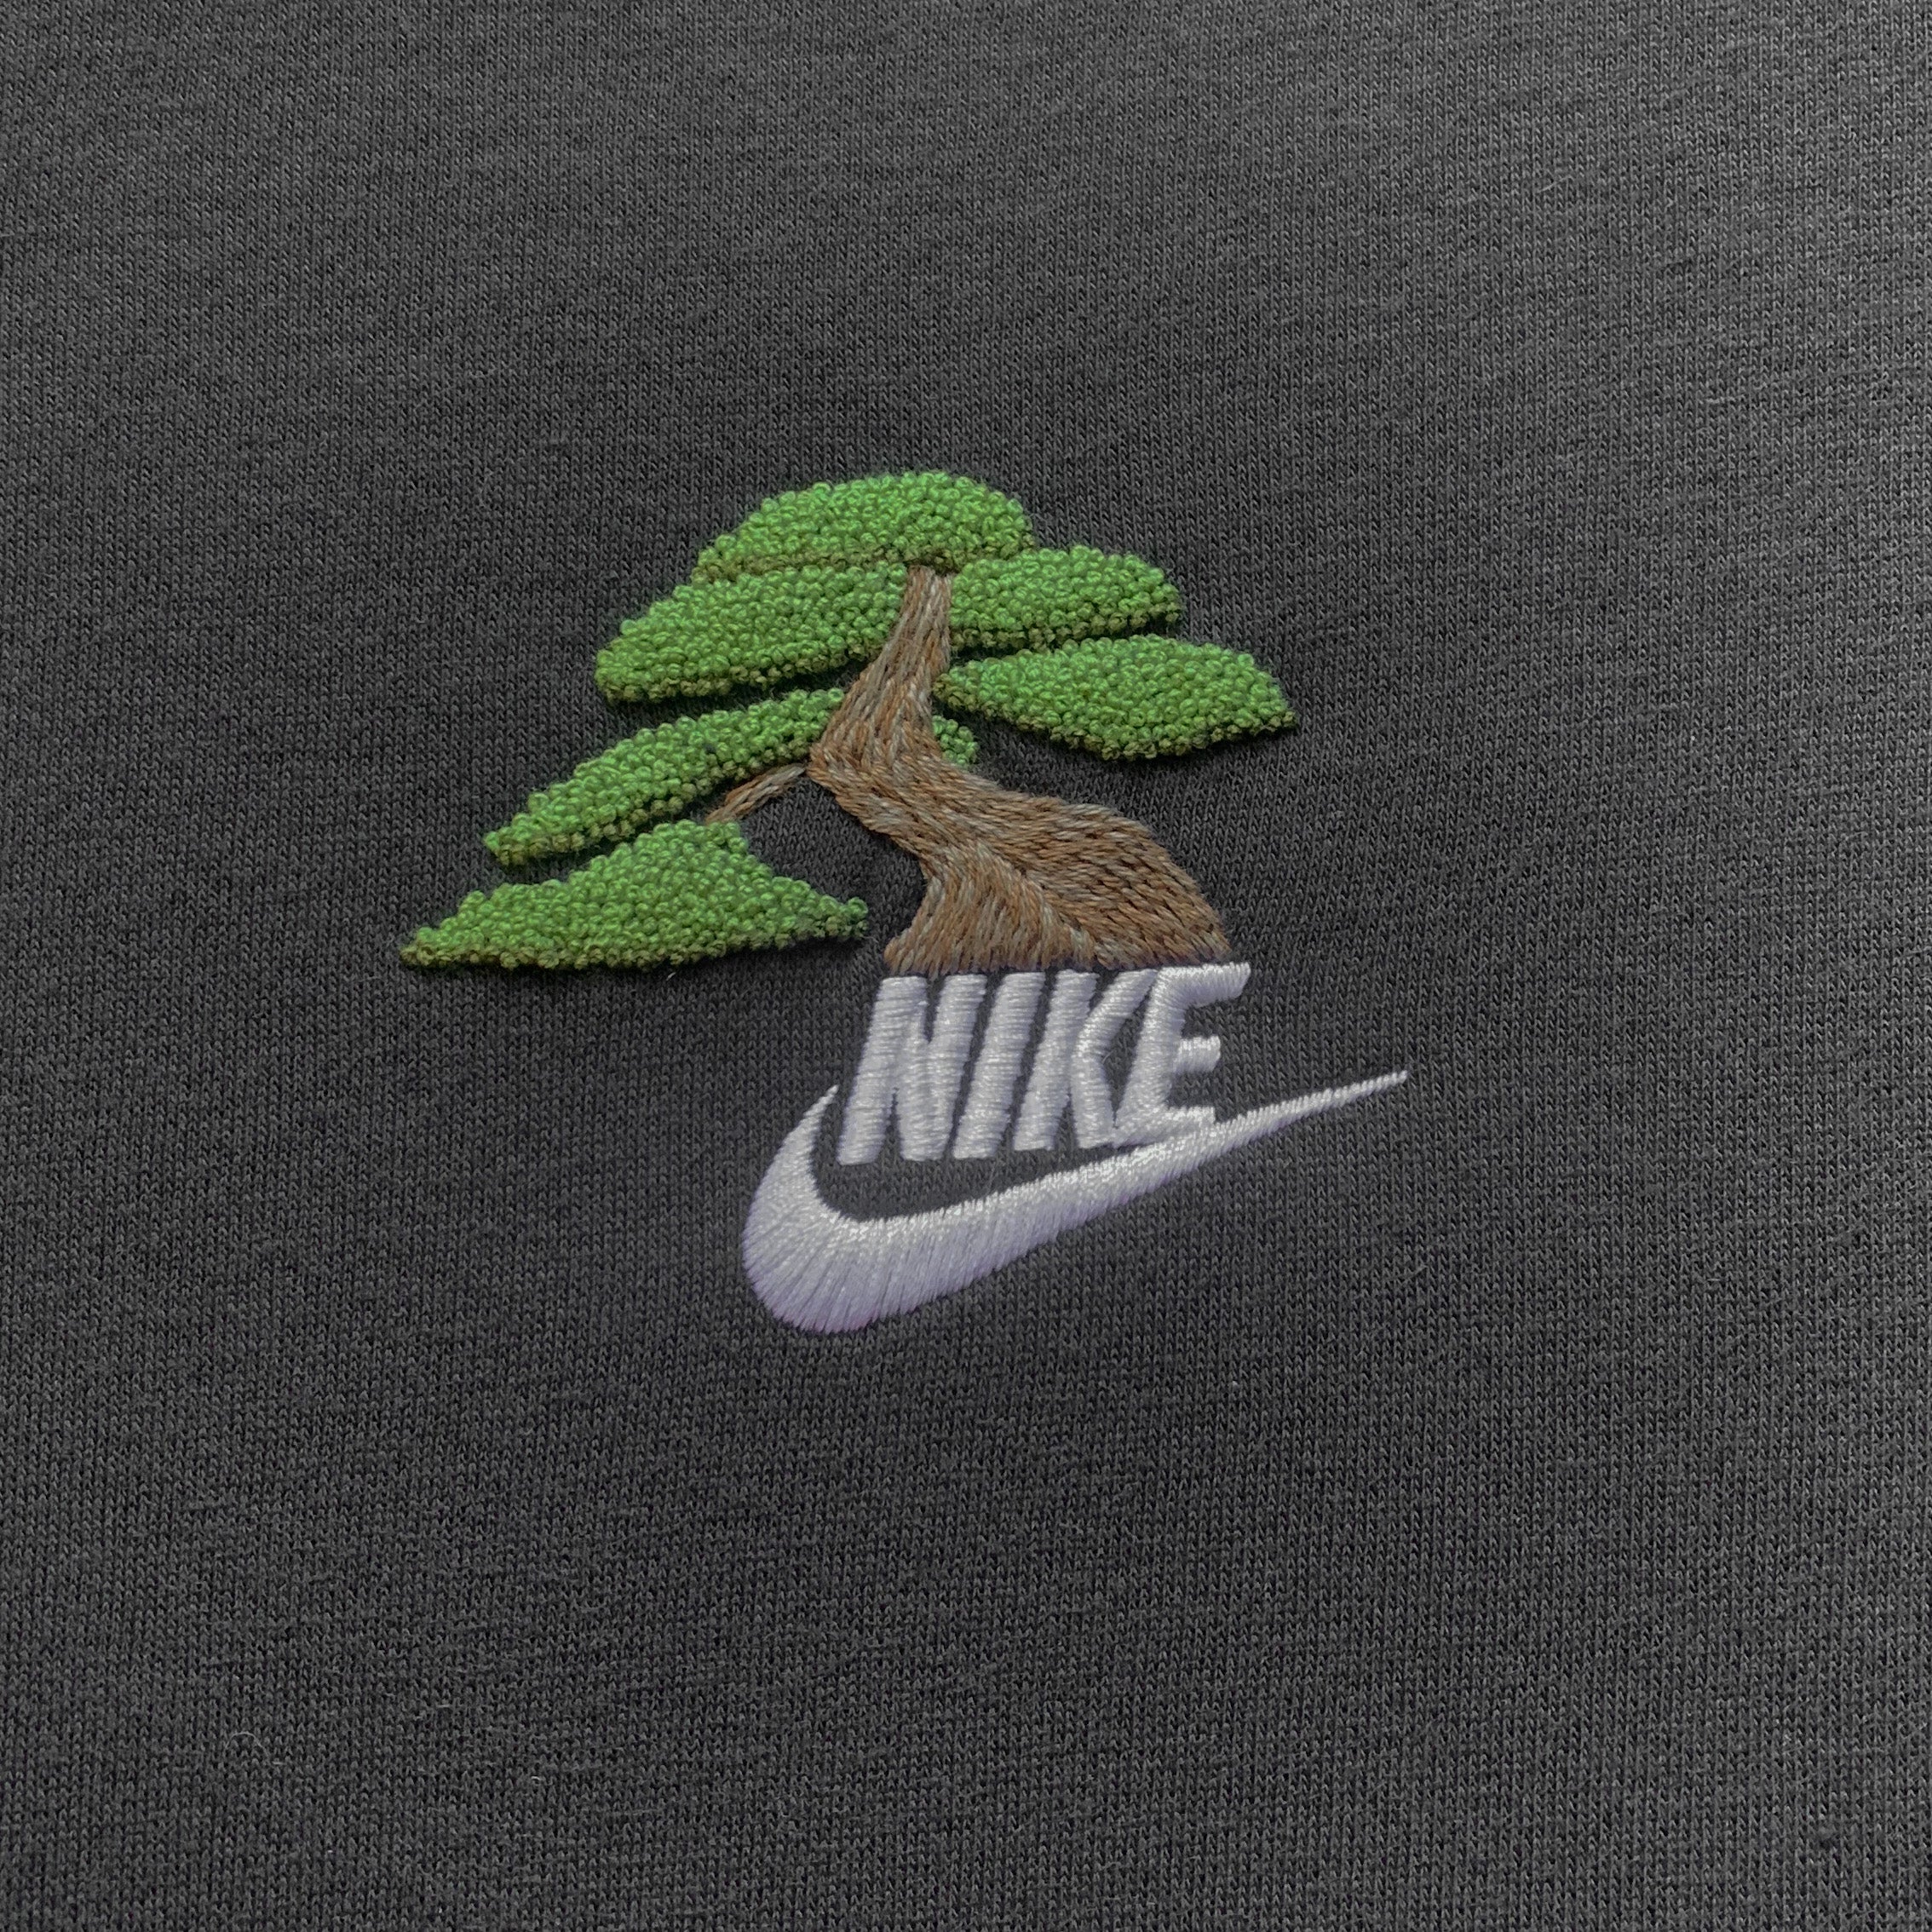 Bonsai Nike